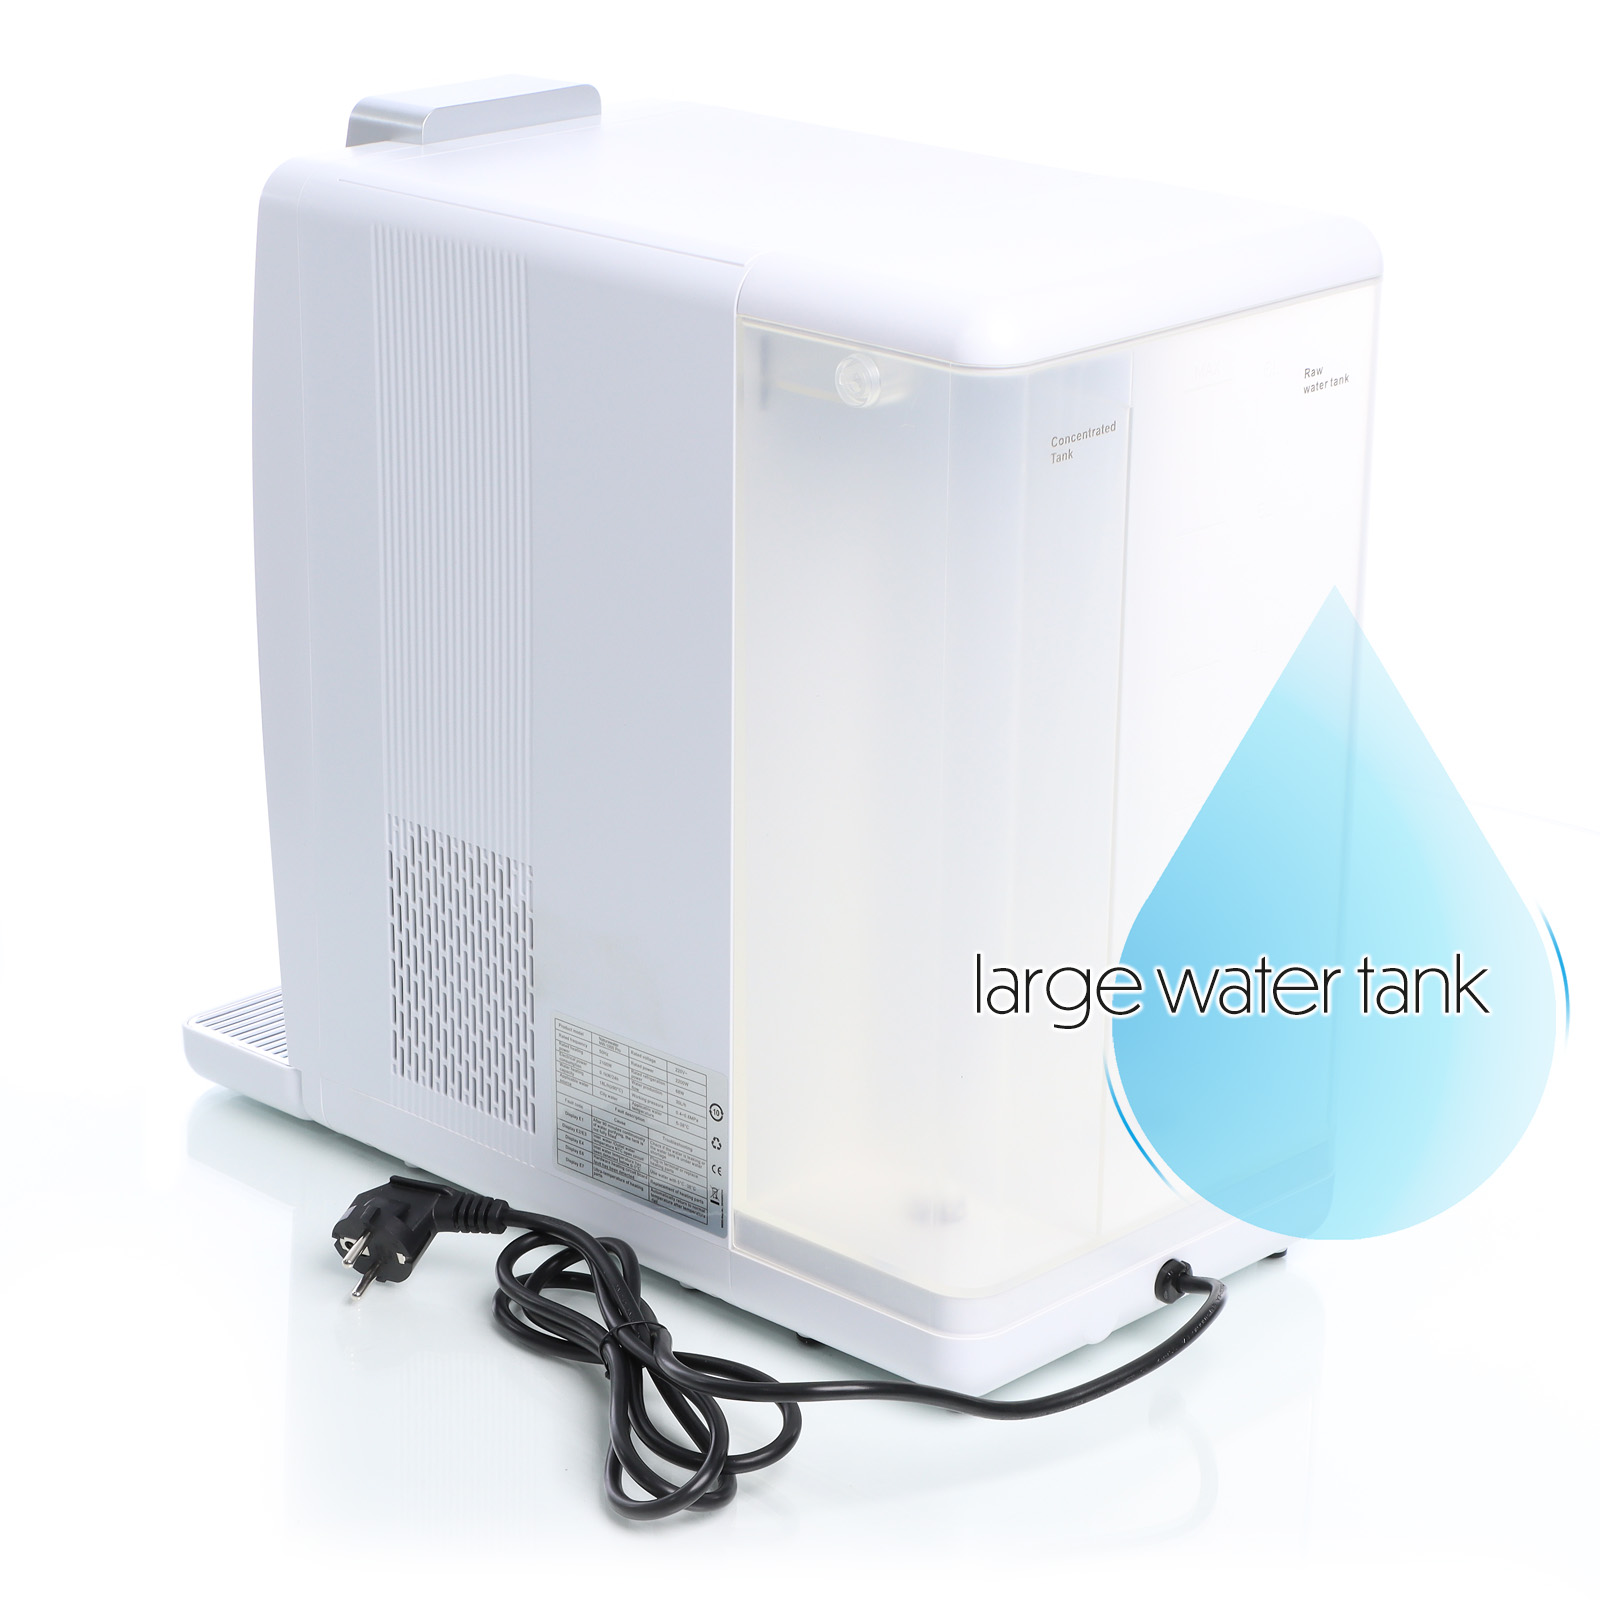 Naturewater - NW-1000 Pro Set filtros de repuesto Osmosis inversa 2 Pac, 1 Ro y 2 carbón activado